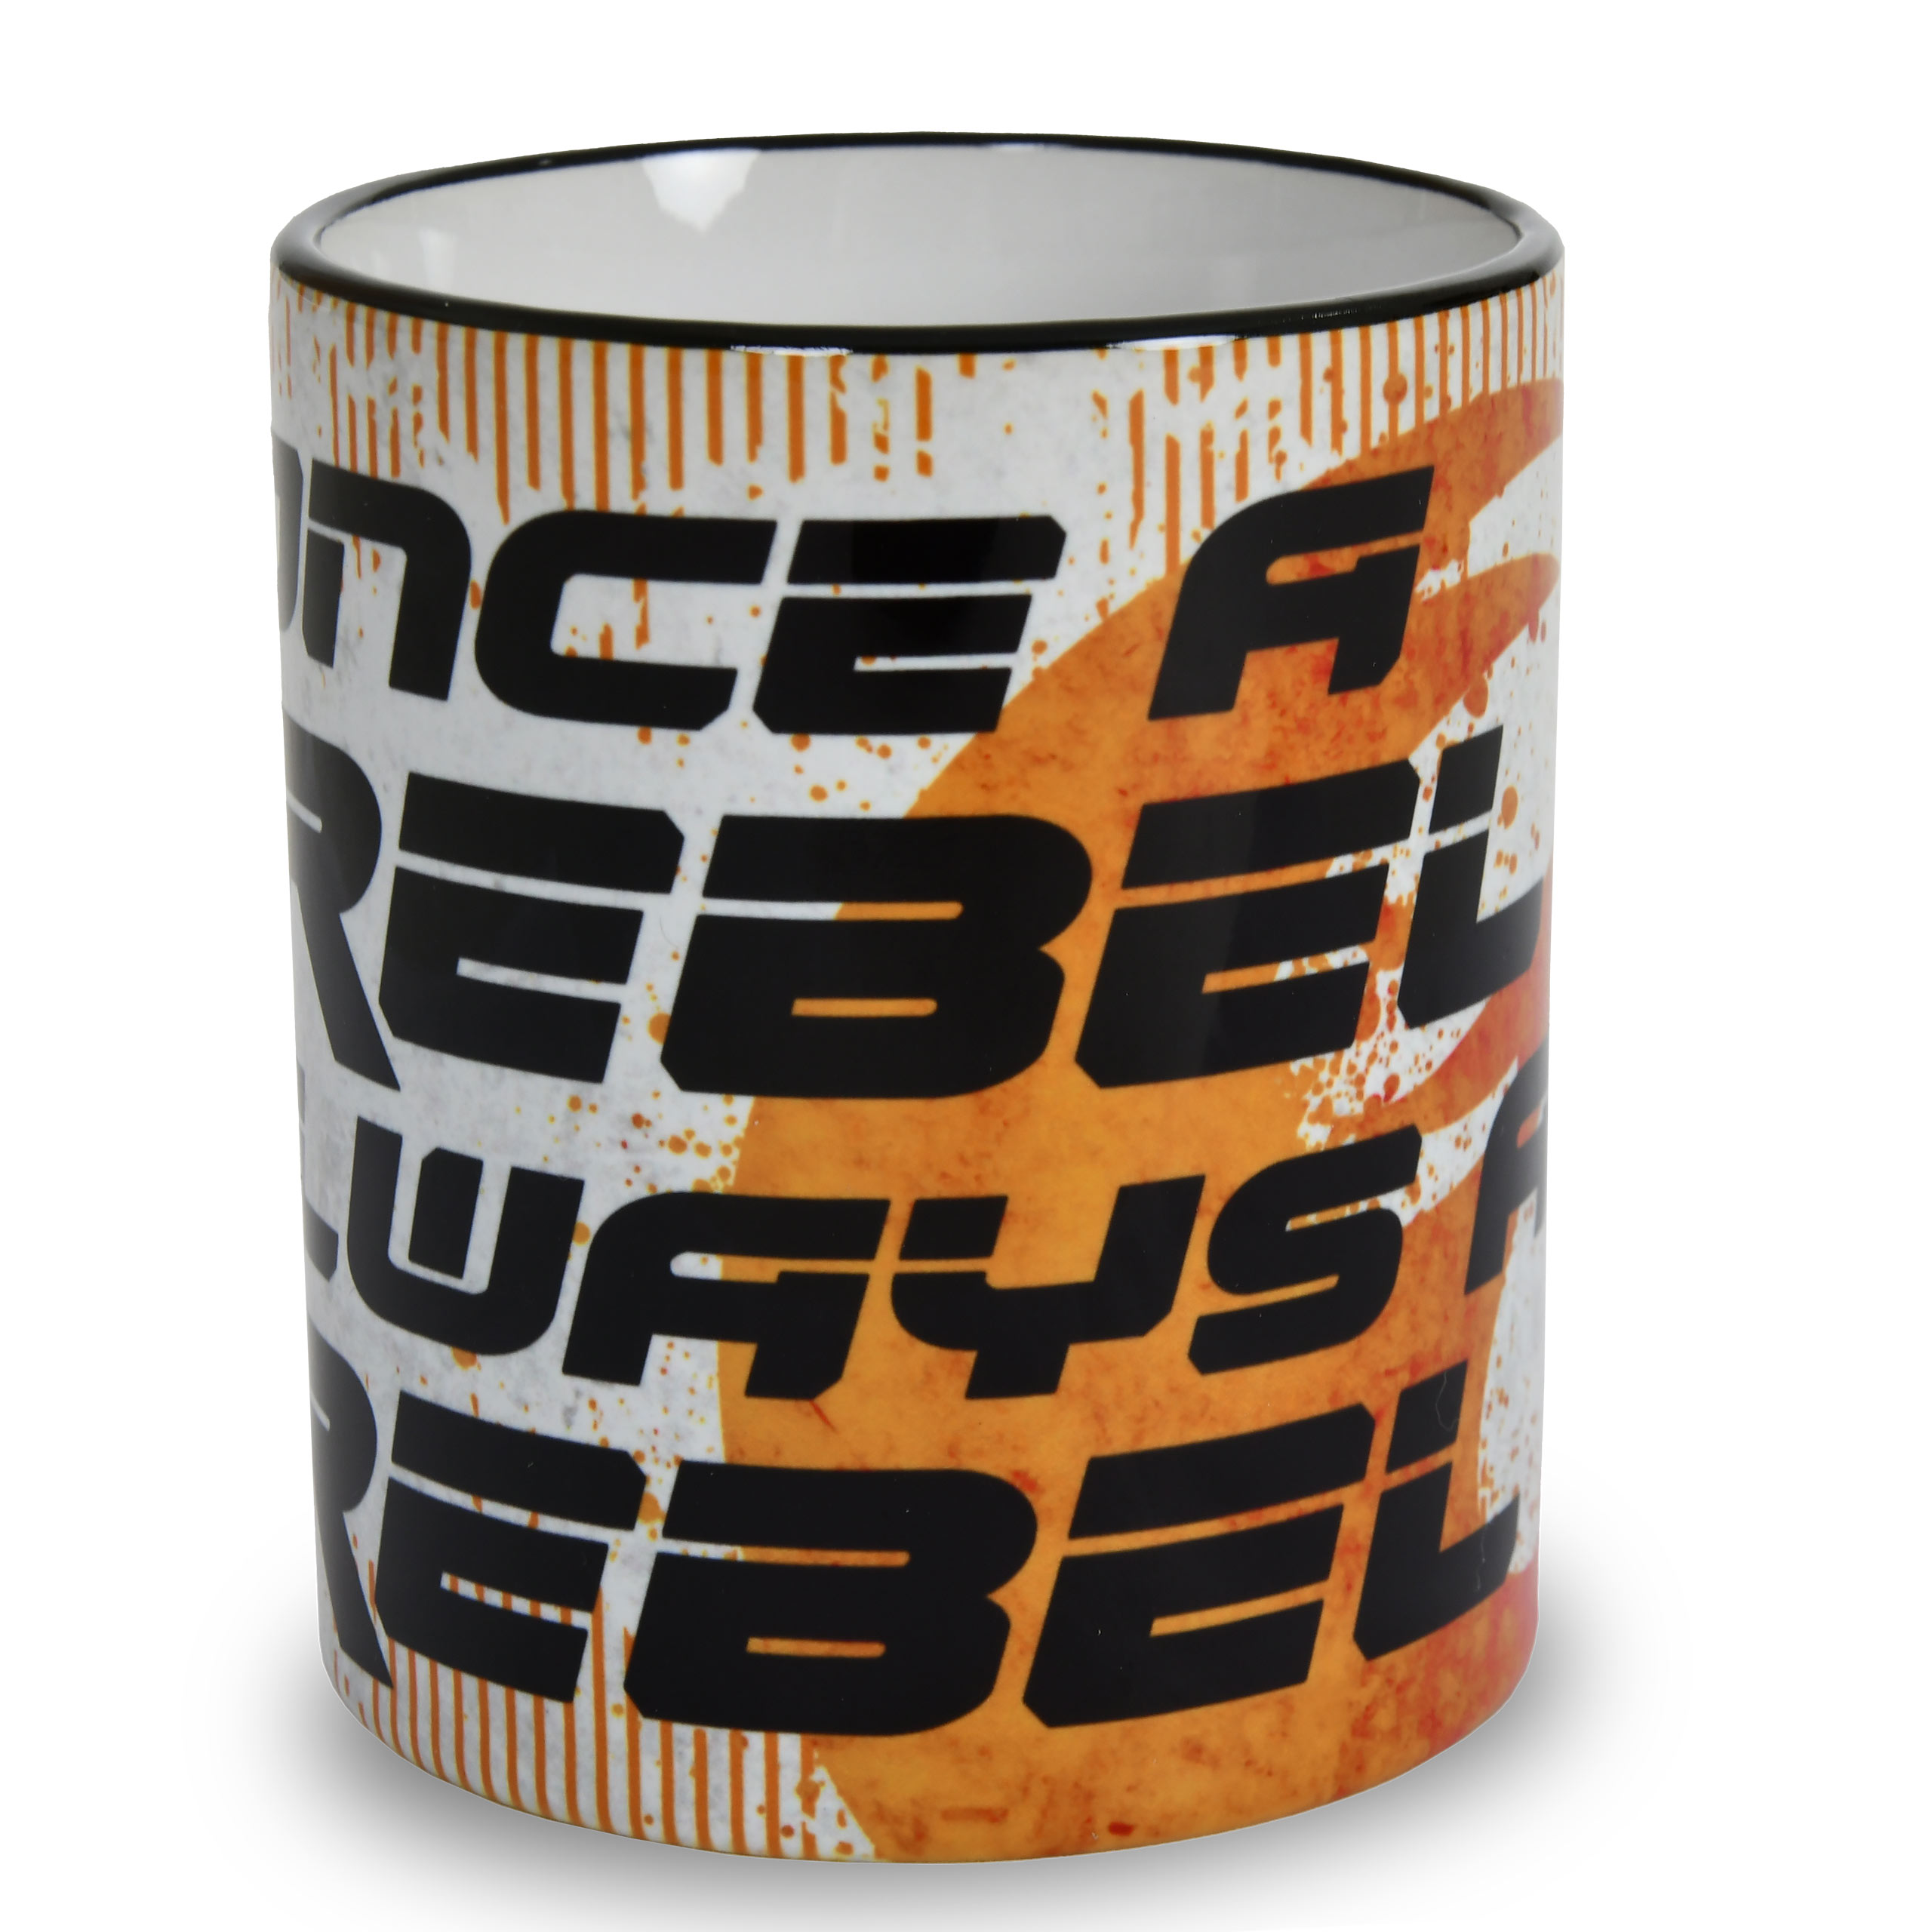 Rebel mug for Star Wars fans